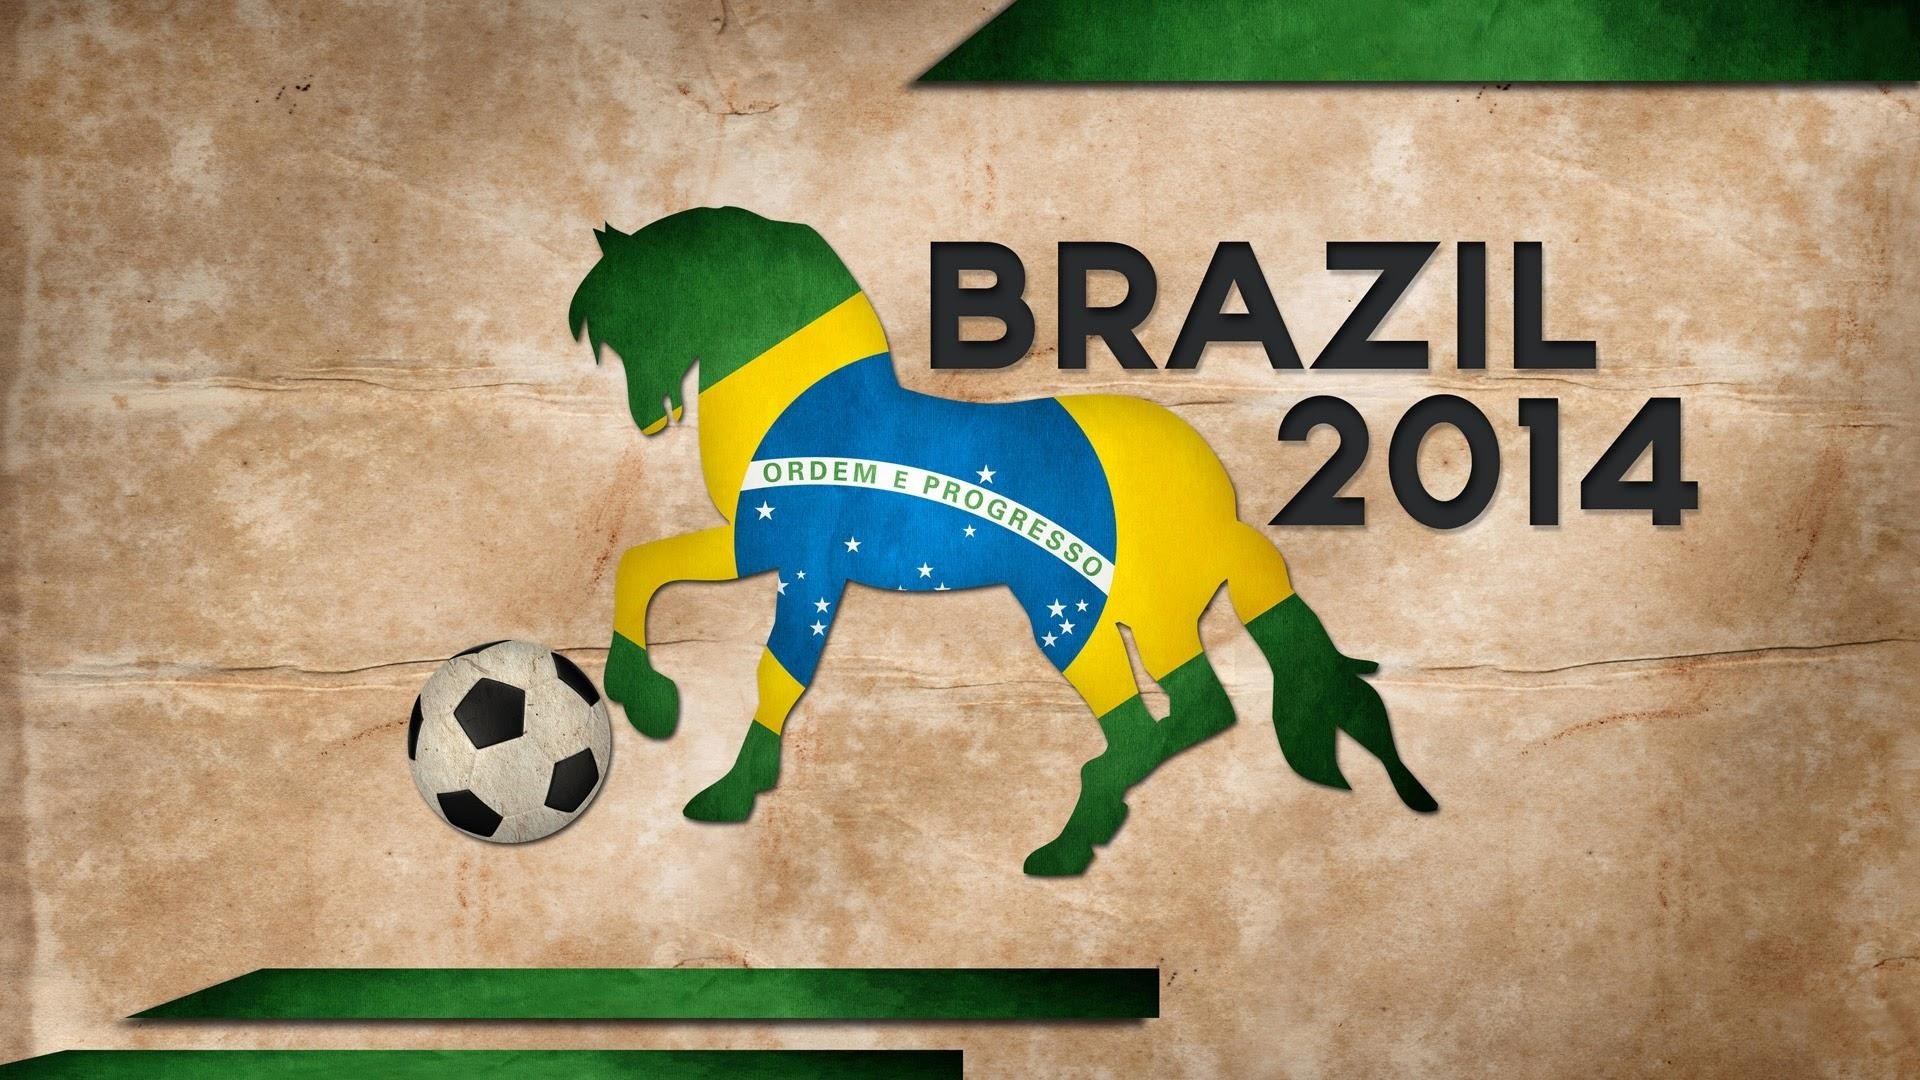 Fifa 2014 Brazil Flag On Horse Kicking Soccer Ball - Brazil Flag Horse - HD Wallpaper 